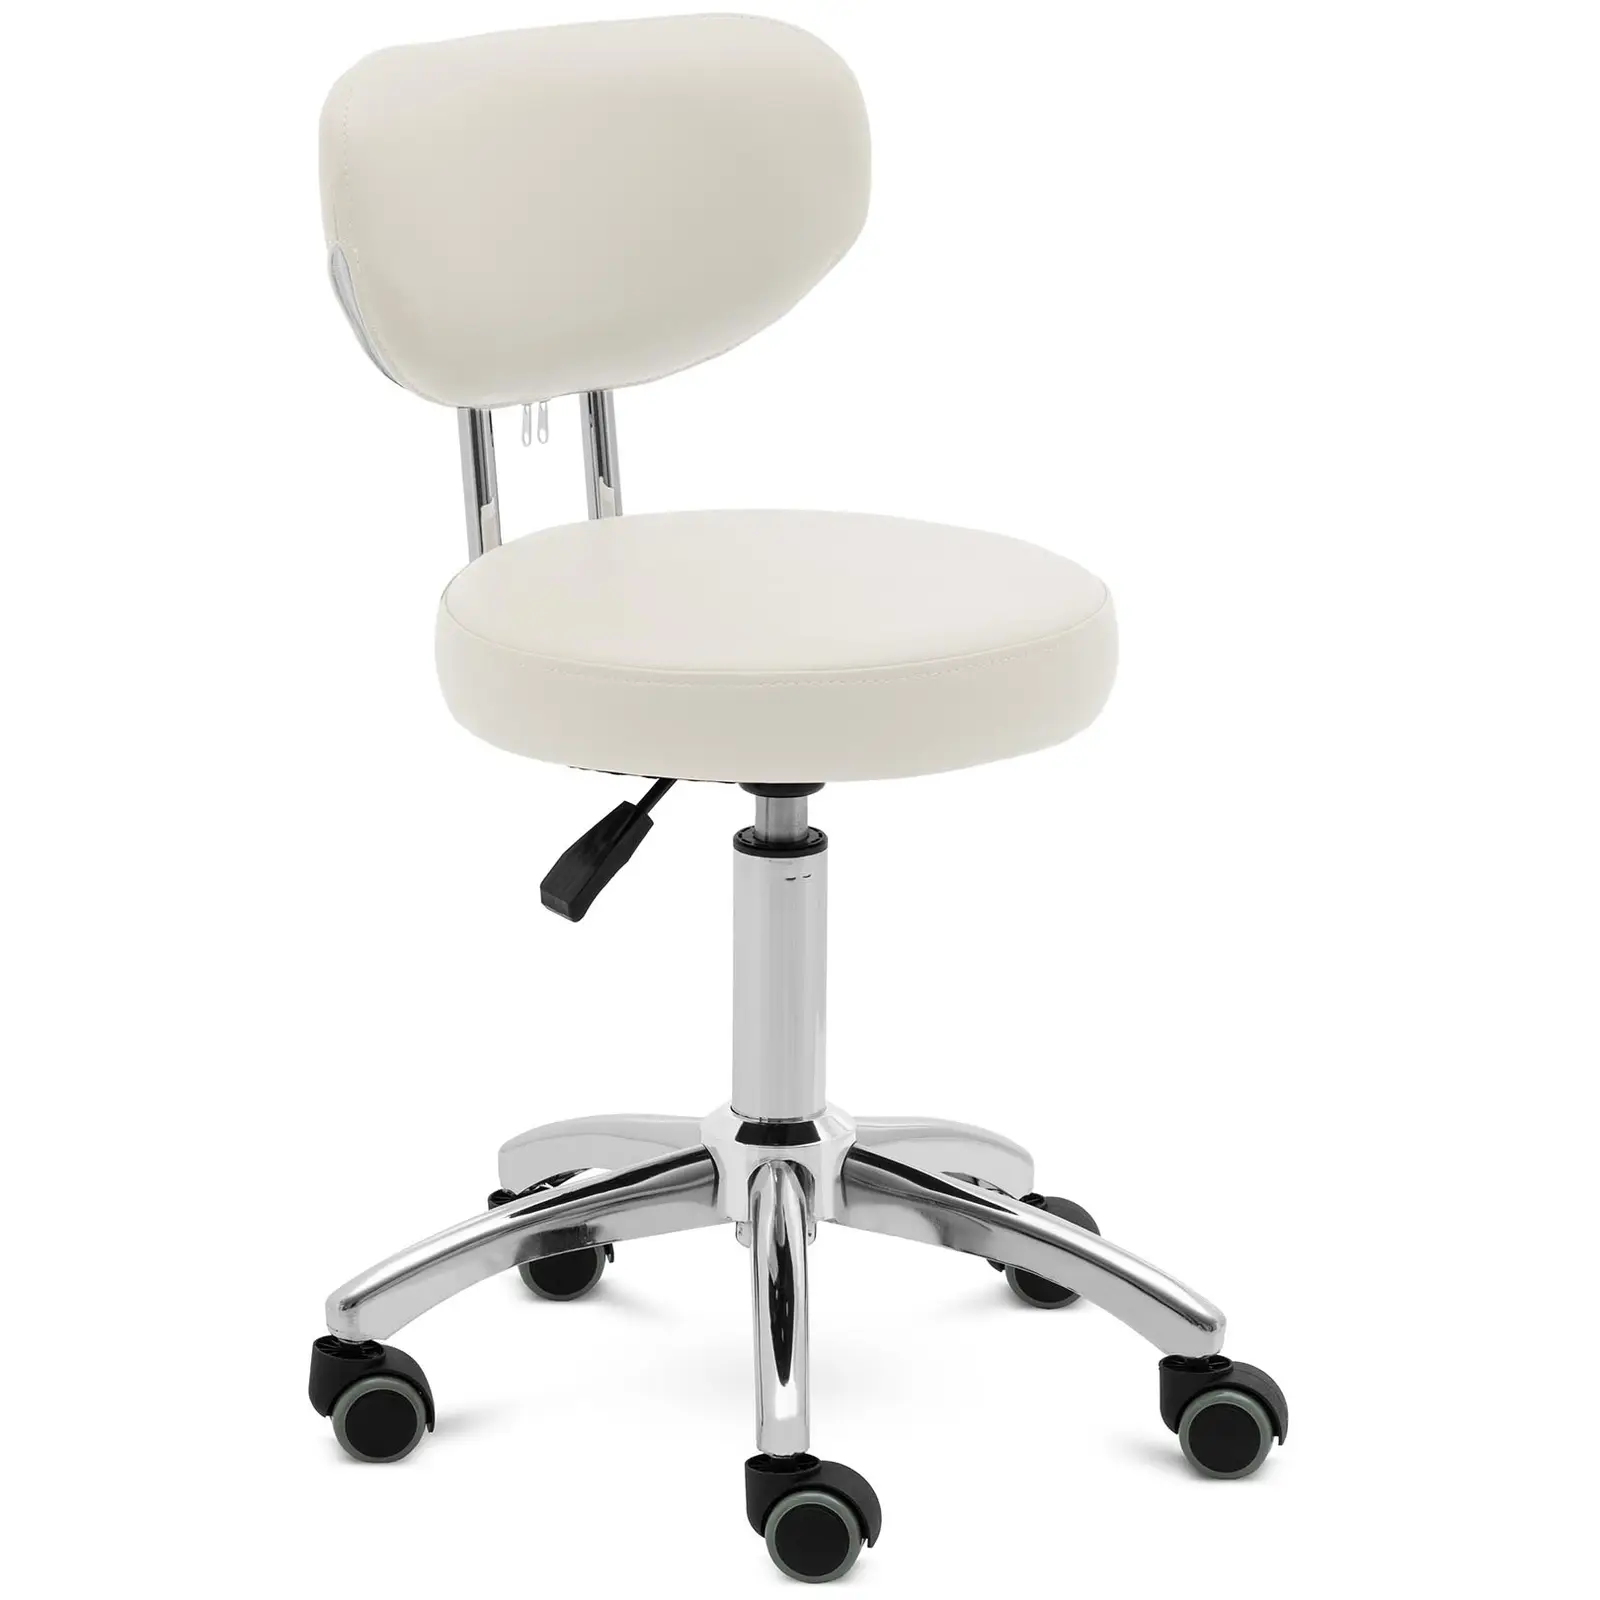 Roller stool with backrest - 46 - 60 cm - 150 kg - beige